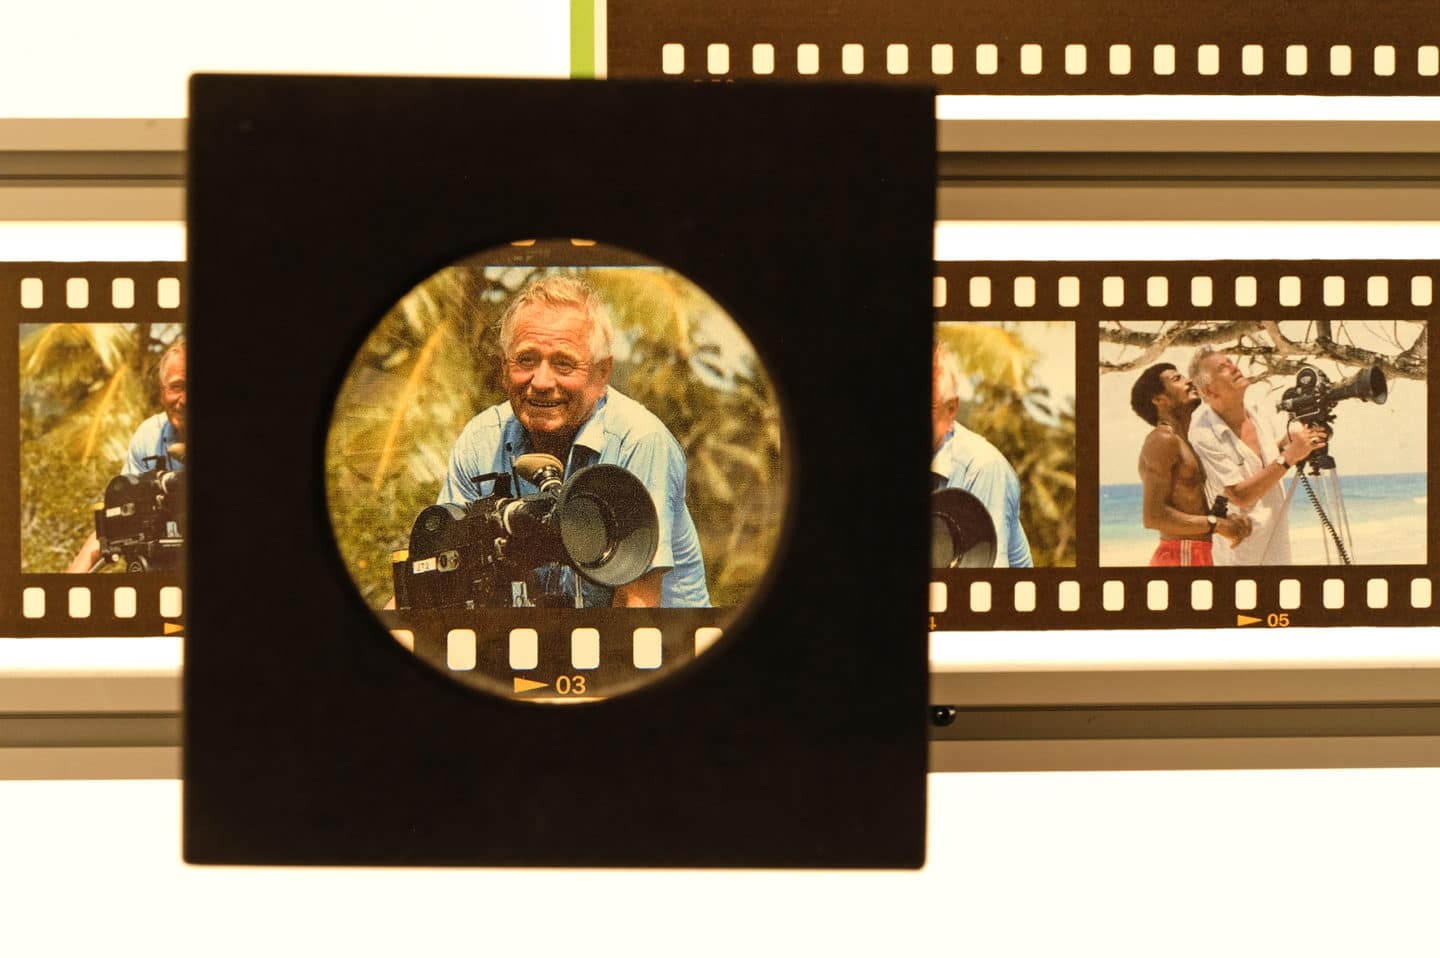 Dia-Streifen zeigen das filmische Schaffen von Heinz Sielmann